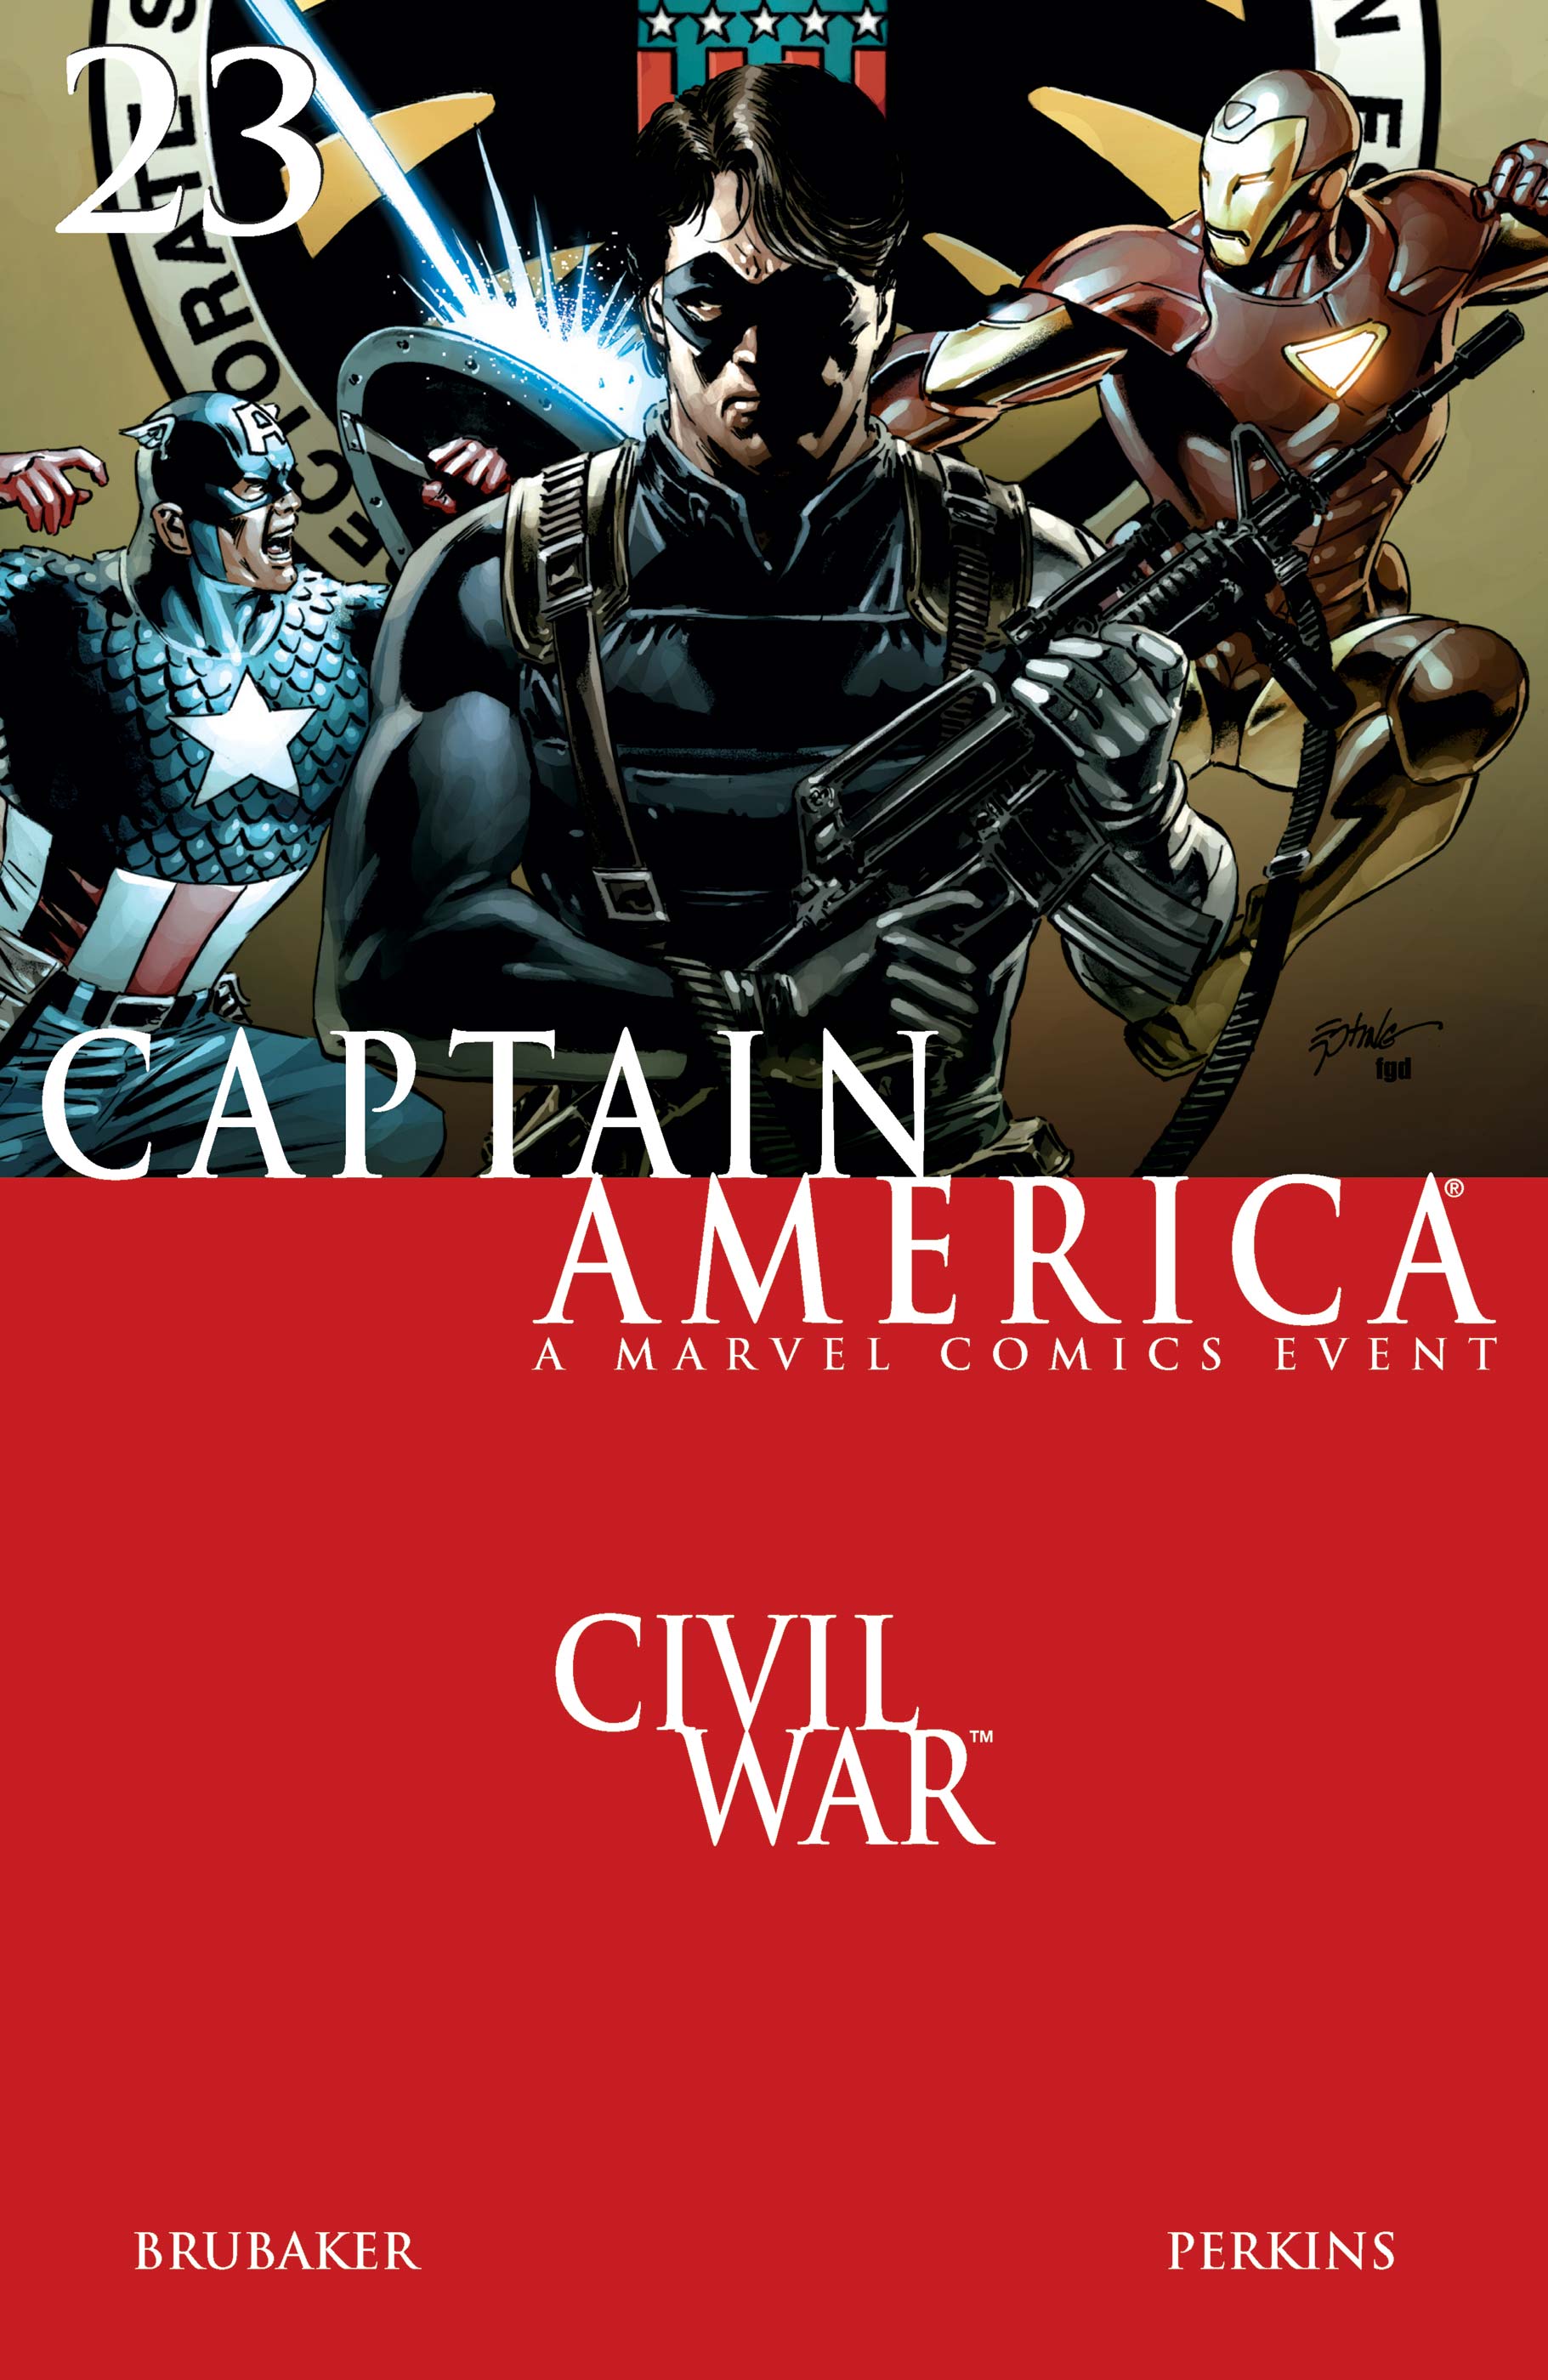 Captain America (2004) #23